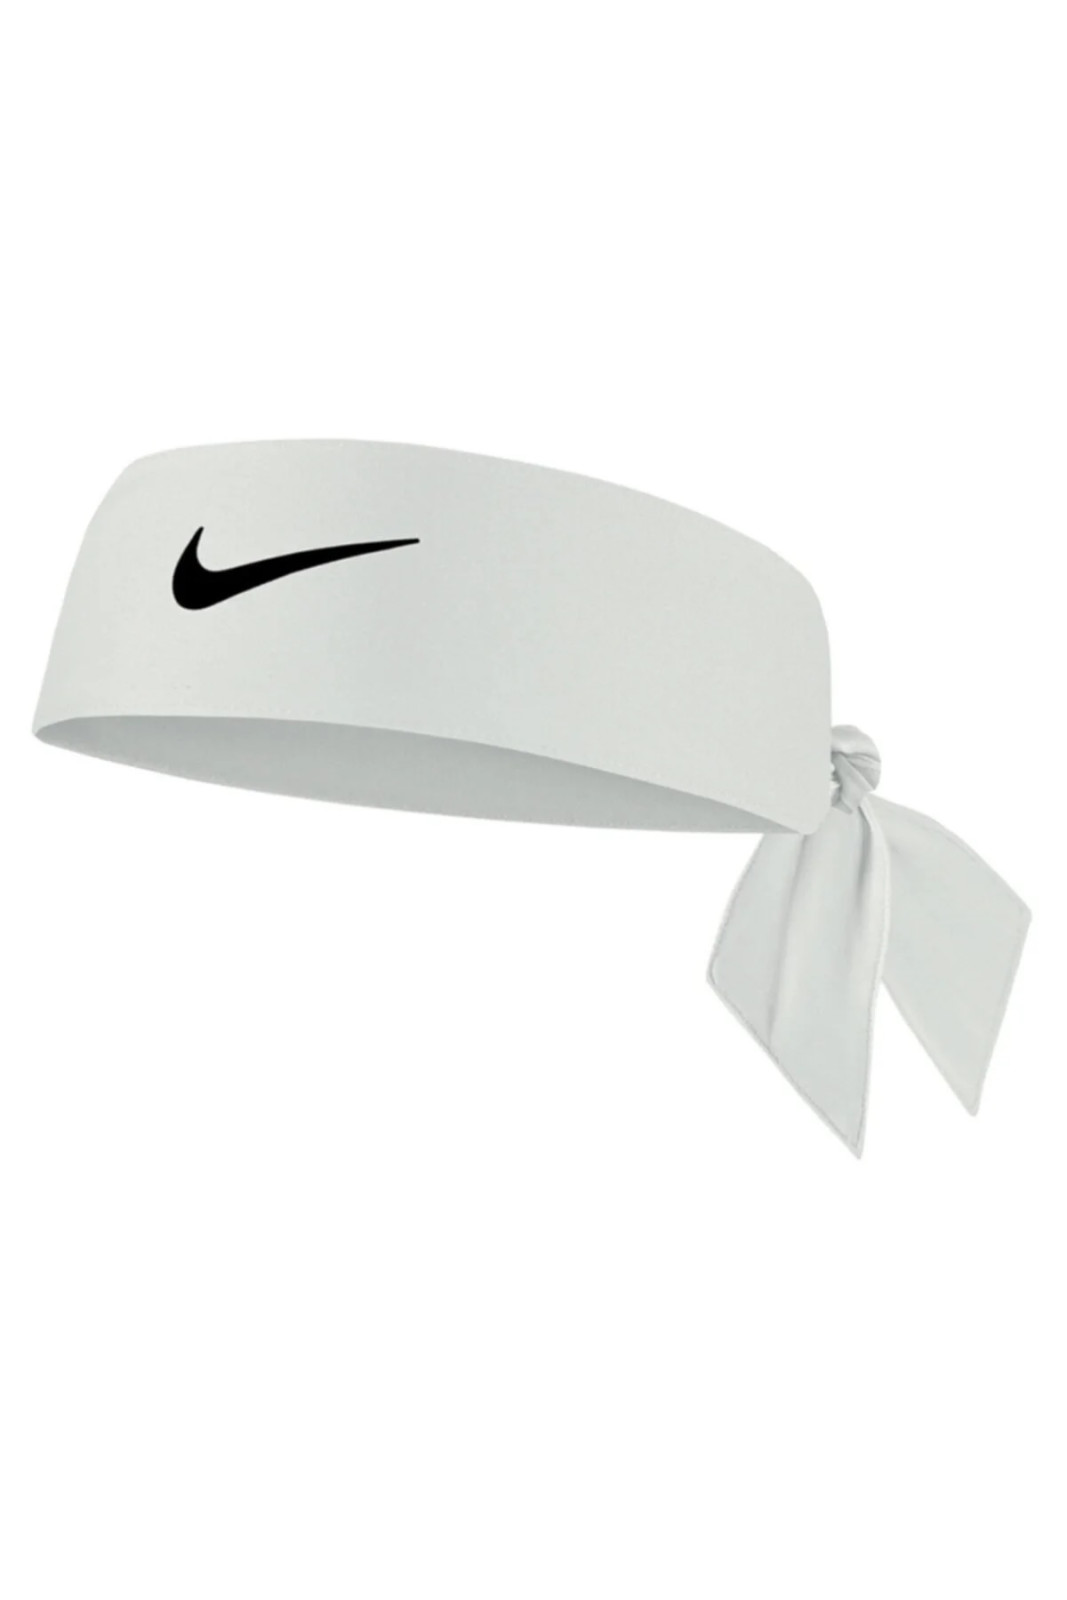 Nike dri-fit head tie 4.0 osfm